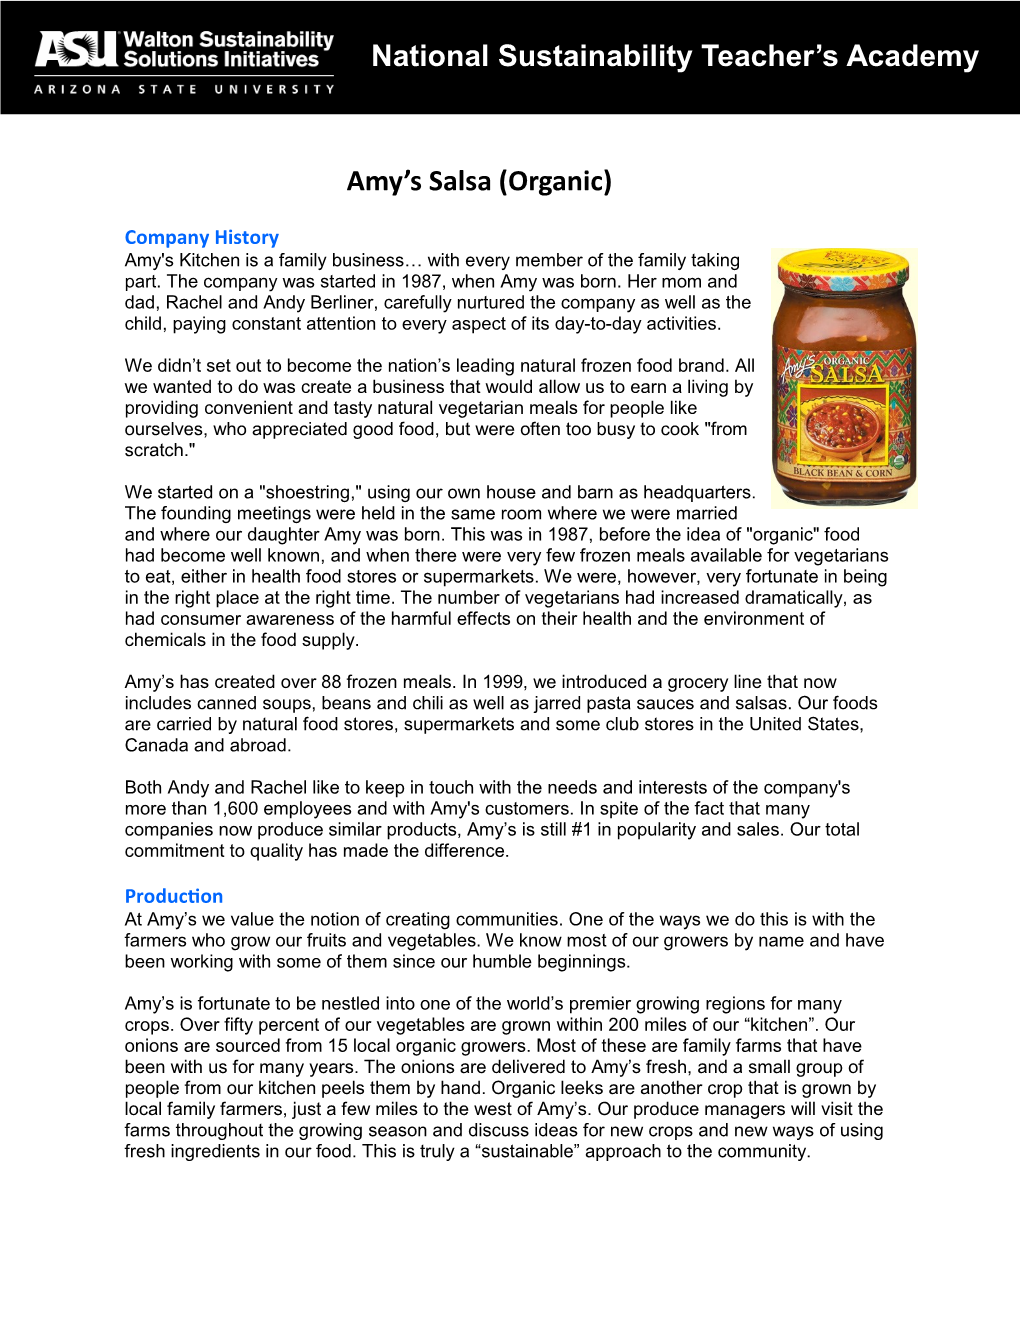 National Sustainability Teacher's Academy Amy's Salsa (Organic)